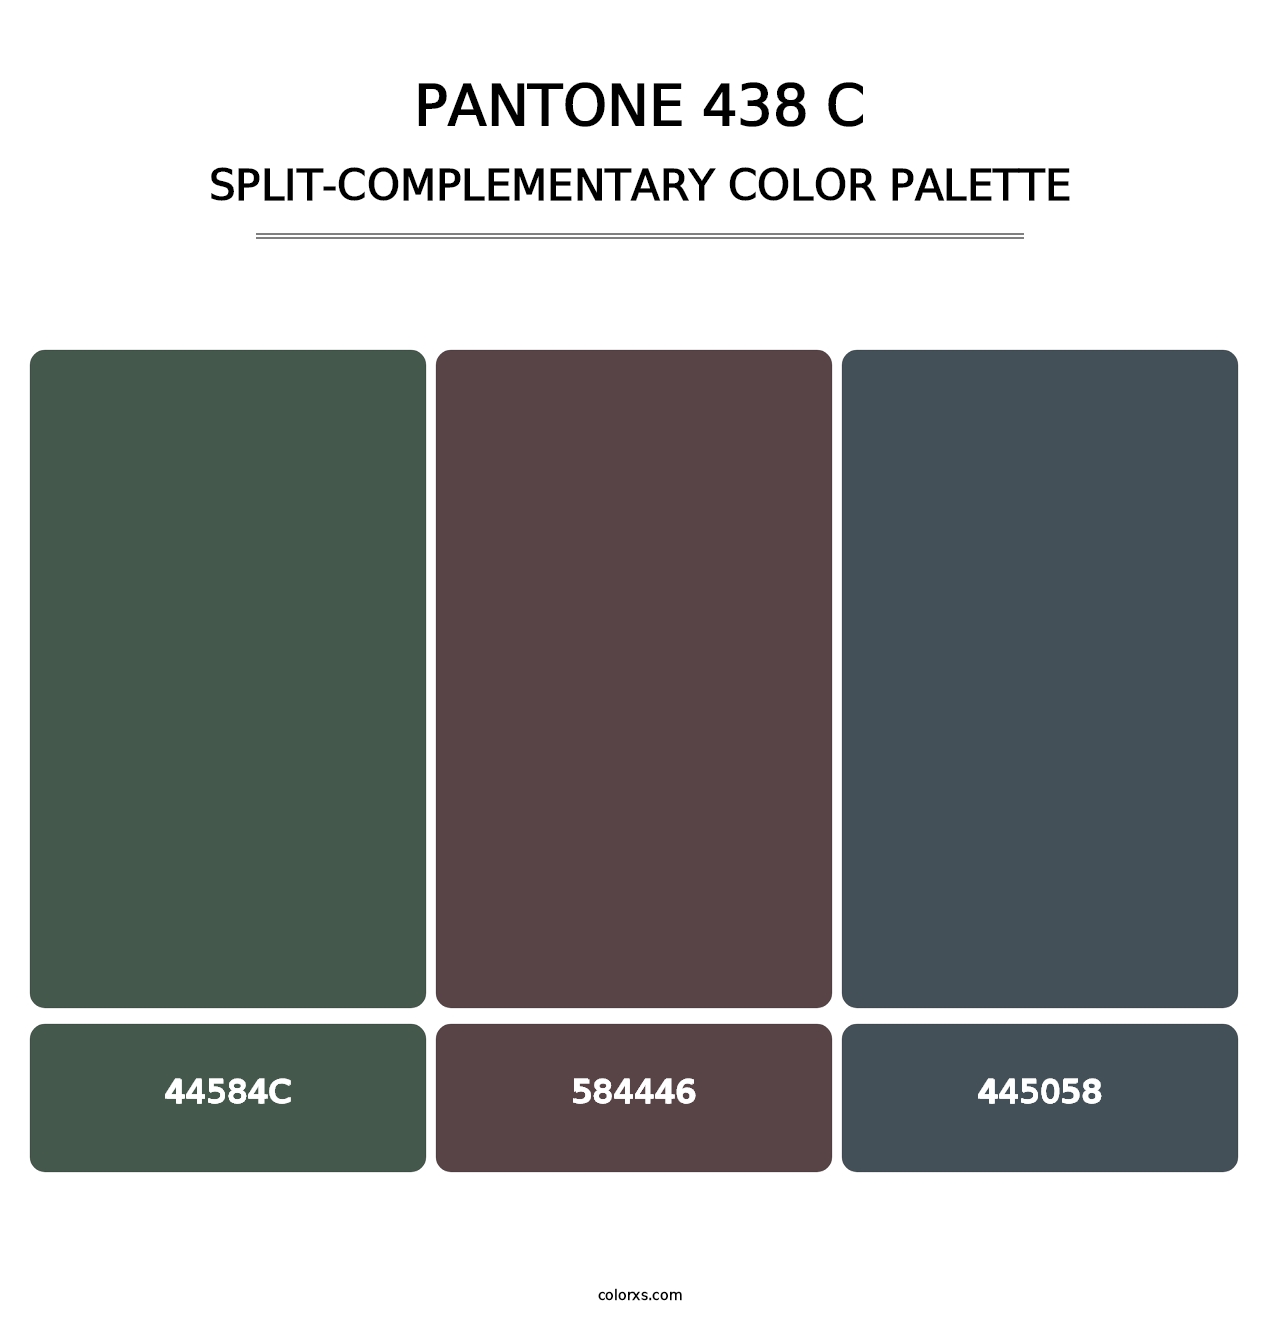 PANTONE 438 C - Split-Complementary Color Palette